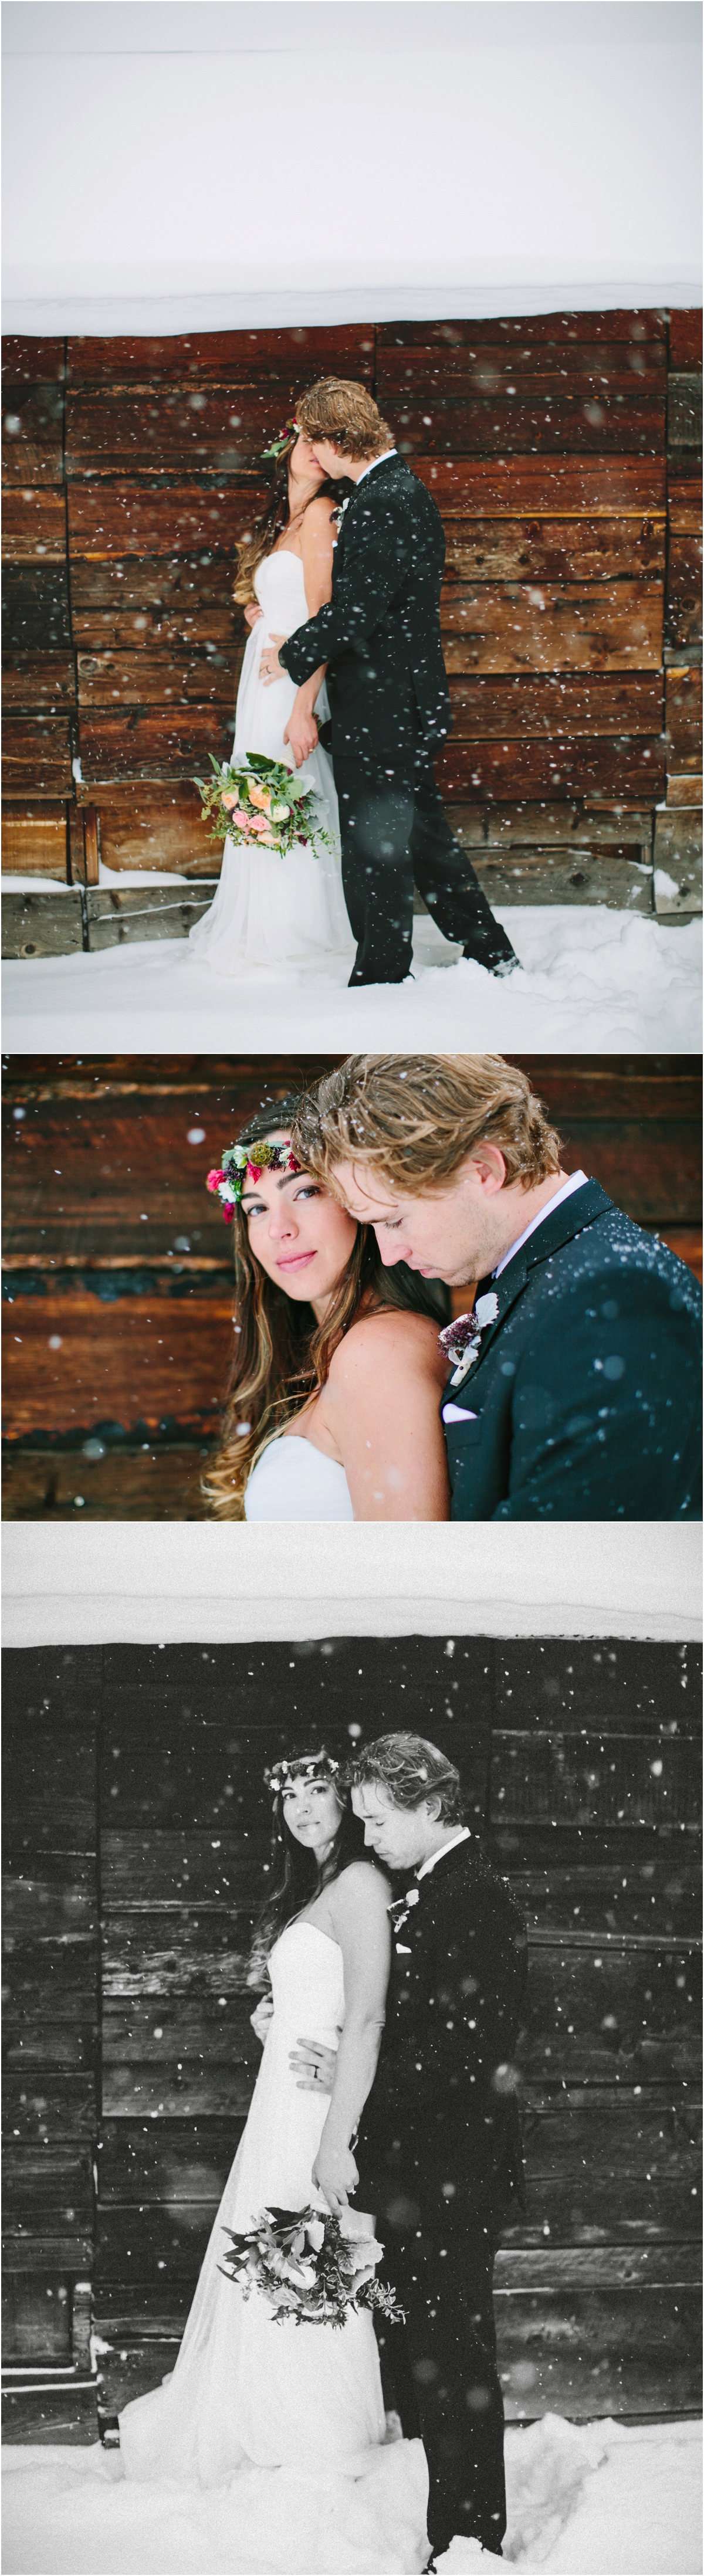 Breckinridge_Colorado_winter_wedding_elopment_0012